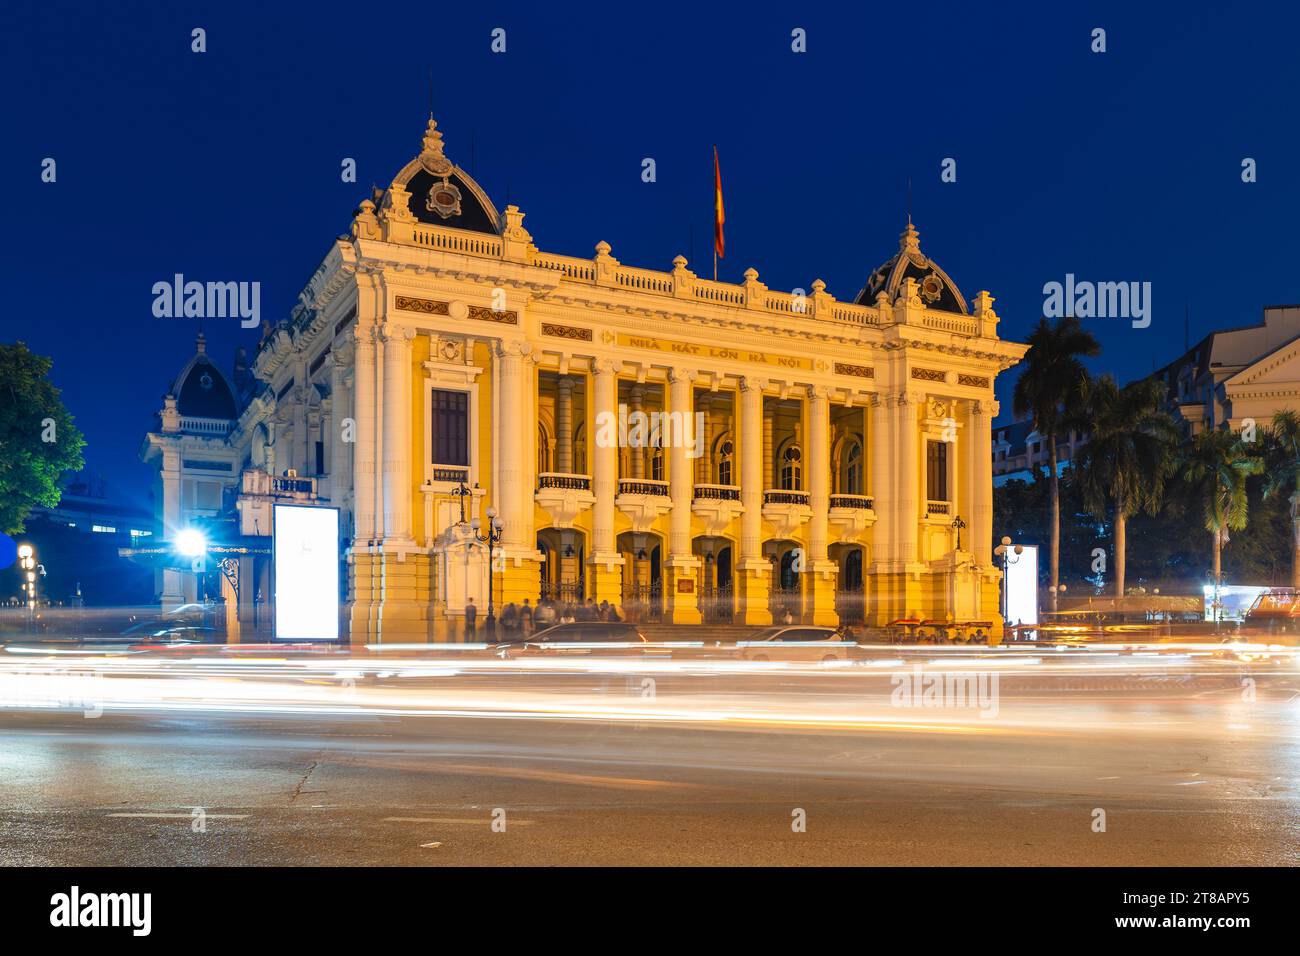 Das Opernhaus Hanoi, auch bekannt als das große Opernhaus, befindet sich in Hanoi, Vietnam. Übersetzung: Hanoi Opera House Stockfoto